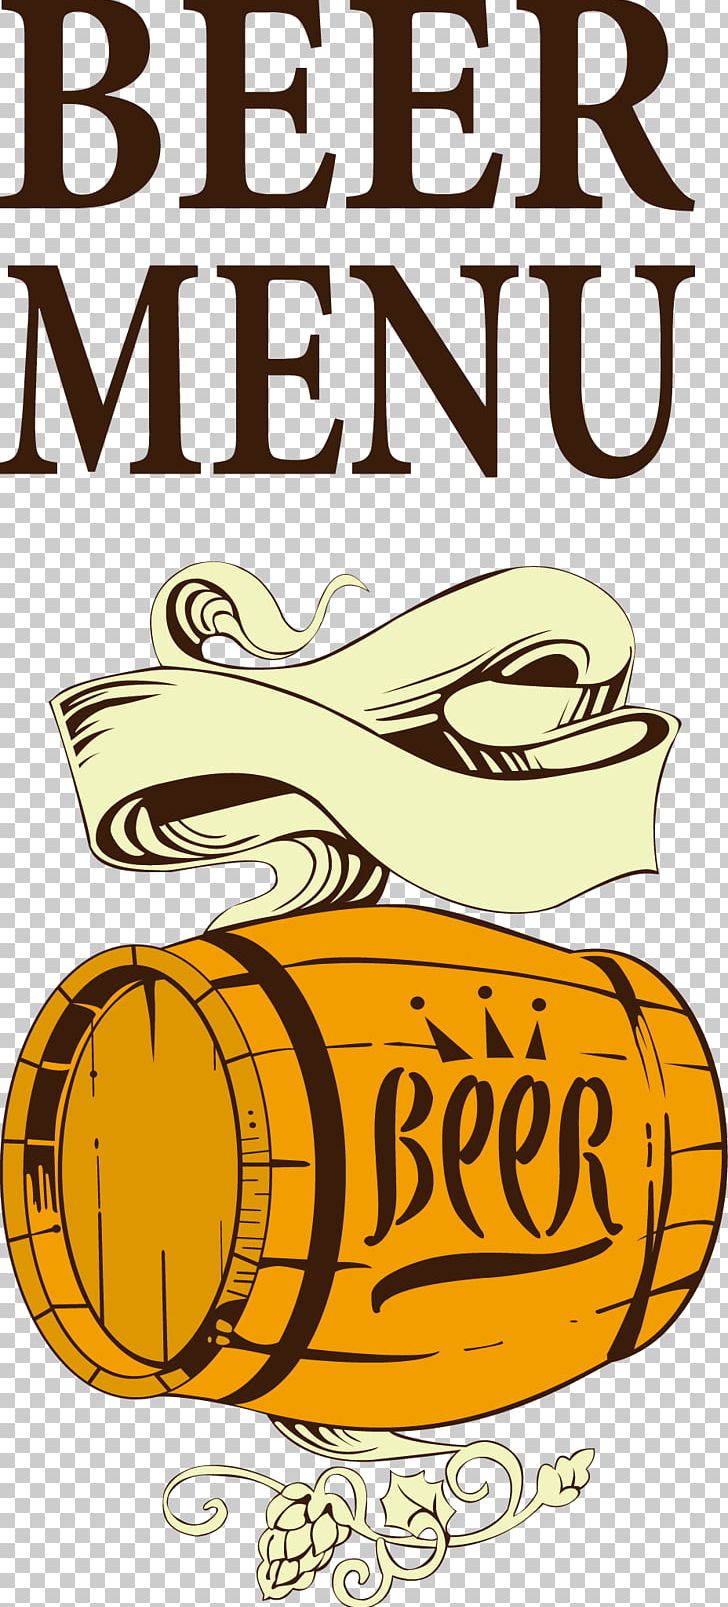 Beer Wine Menu Barrel PNG, Clipart, Adobe Illustrator, Alcoholic Beverage, Bar, Barrel, Beer Free PNG Download